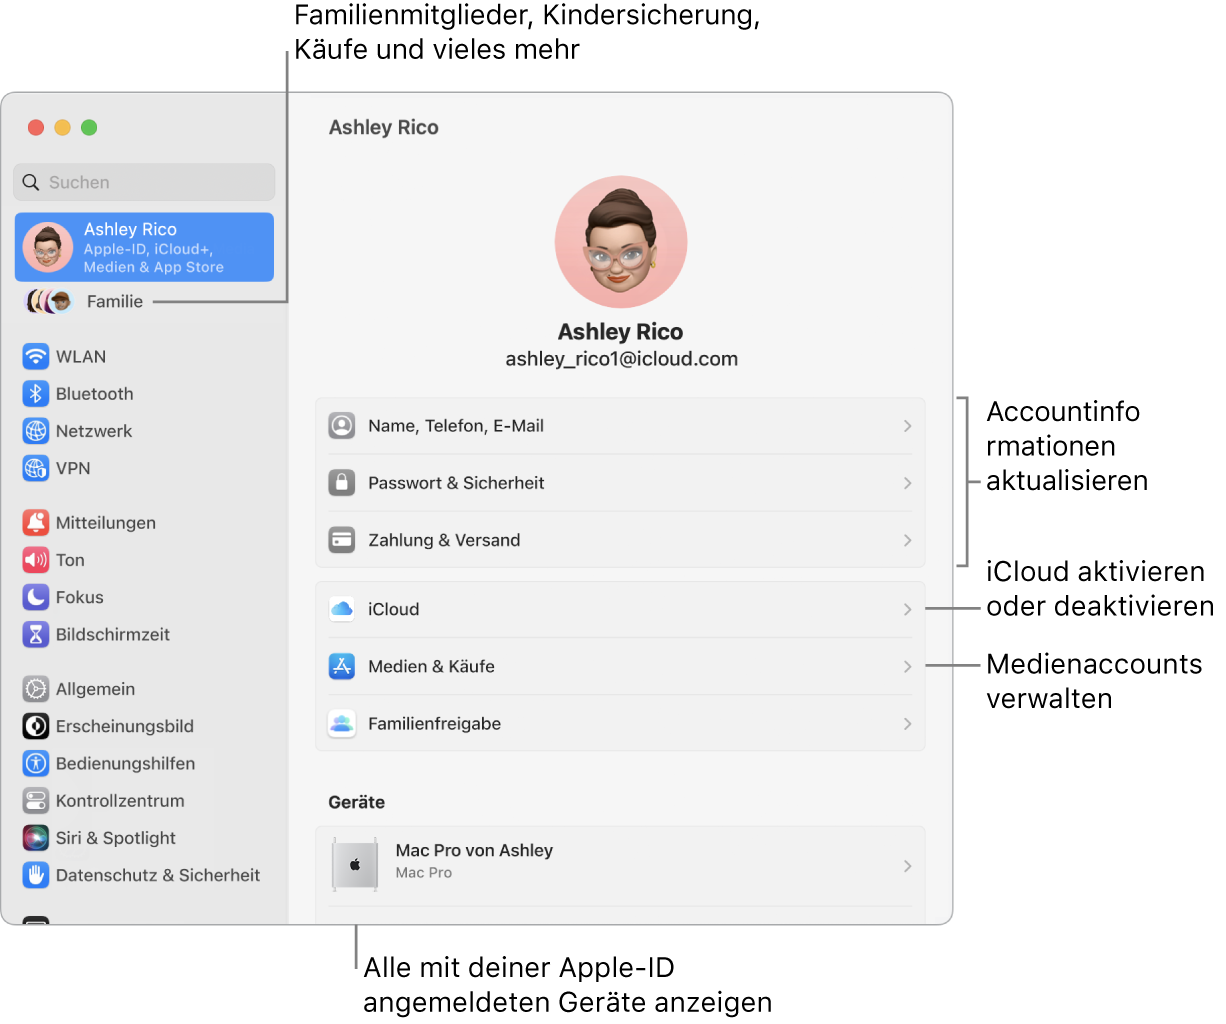 Die Einstellungen „Apple-ID“ in den Systemeinstellungen mit Beschriftungen zum Aktualisieren der Accountinformationen, Ein- bzw. Ausschalten von iCloud-Funktionen, Verwalten von Medienaccounts und für die Funktion „Familie“, um Familienmitglieder, Kindersicherung, Käufe und mehr zu verwalten.